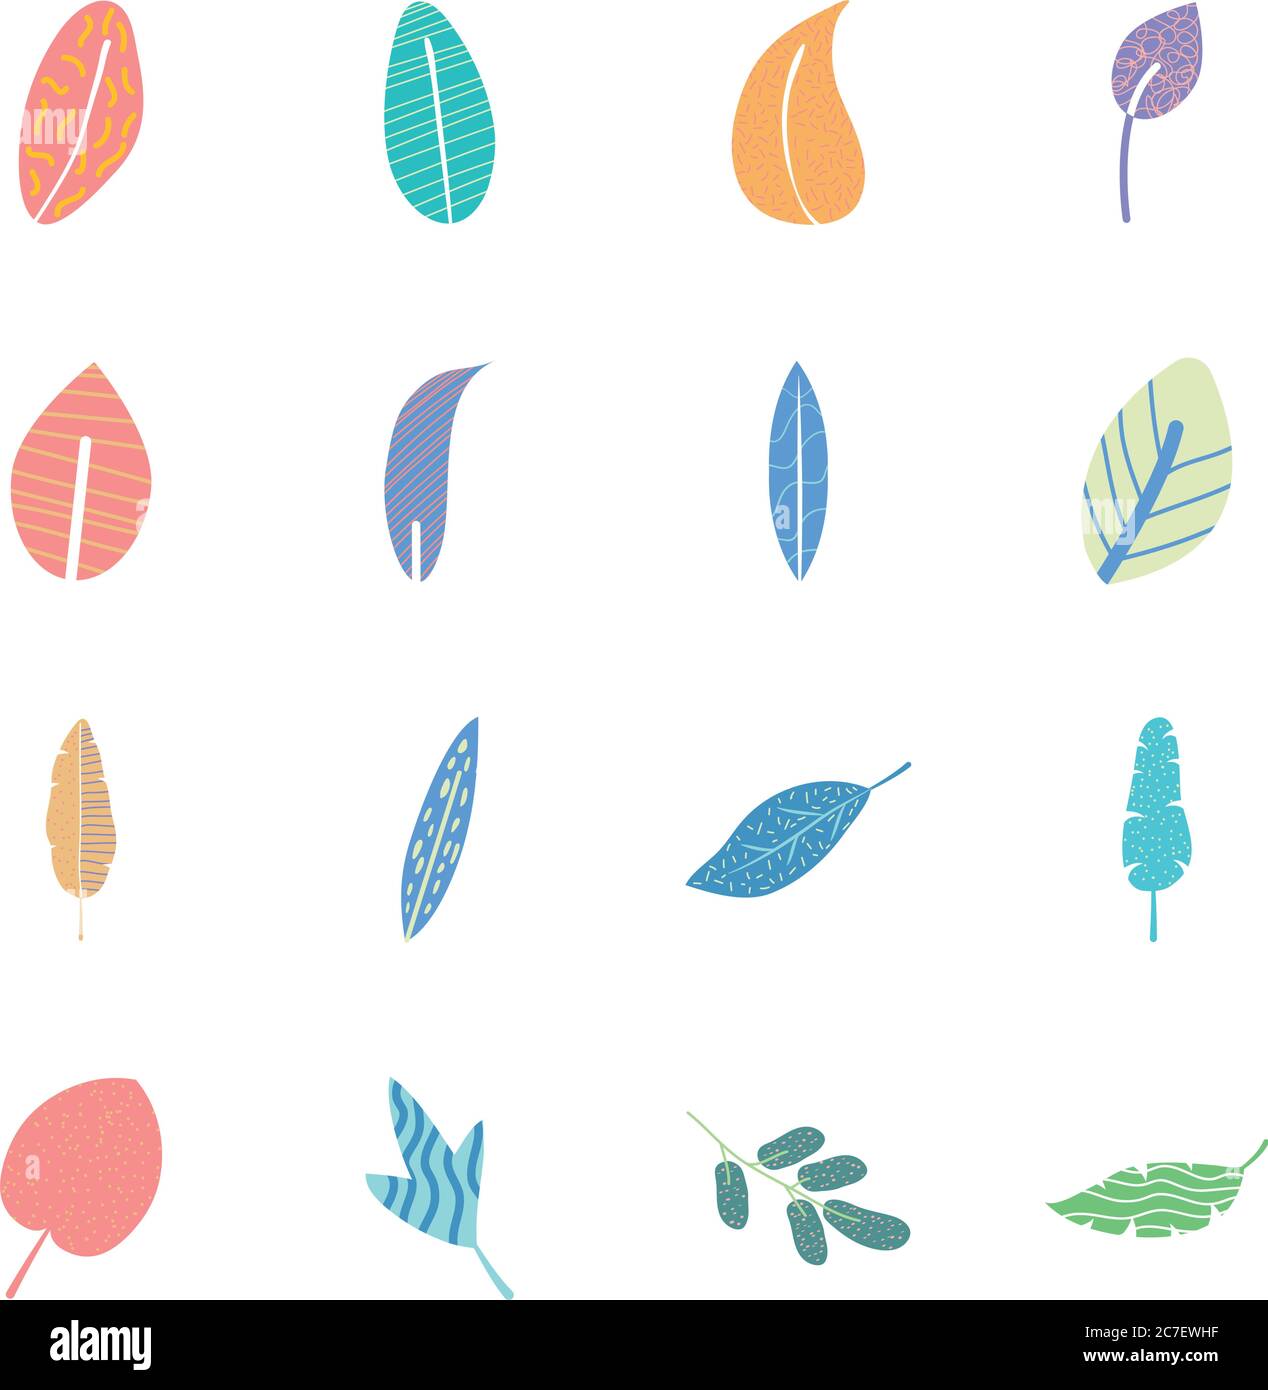 conjunto de iconos de hoja de hiedra y hojas tropicales abstractas sobre fondo blanco, estilo plano, ilustración vectorial Ilustración del Vector